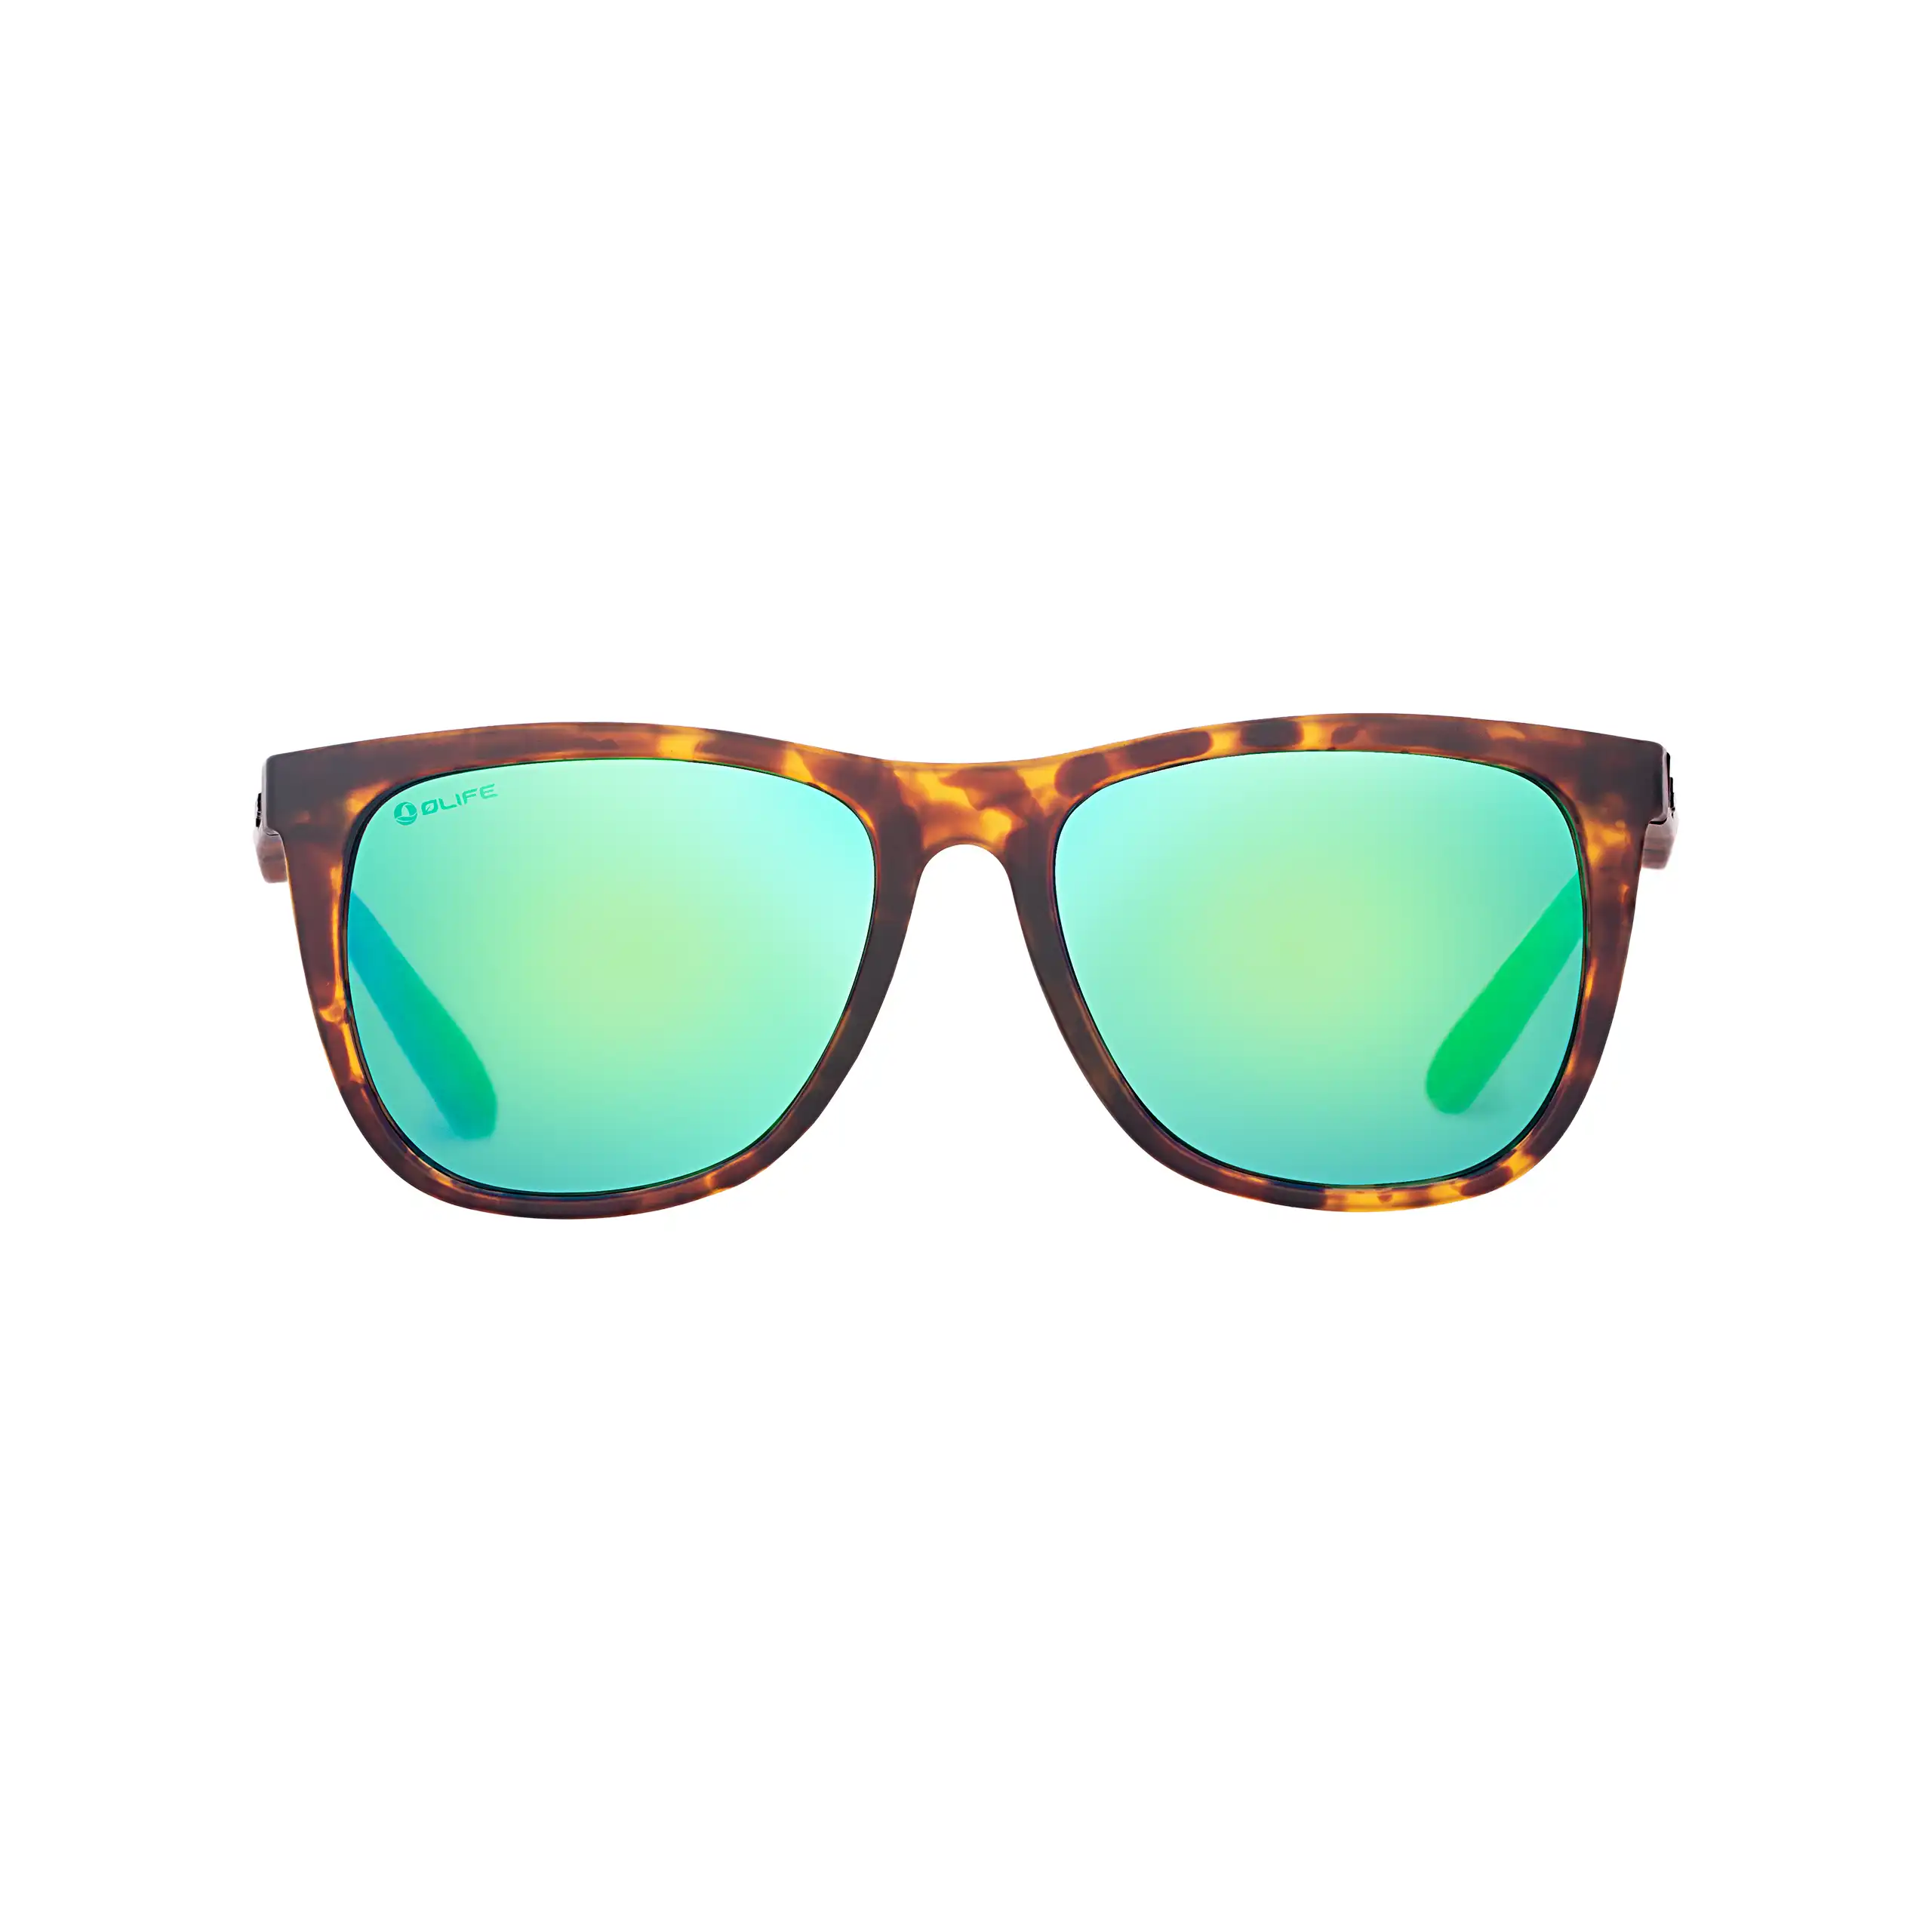 Olife Sunsoul Unisex Polarized Sunglasses & Archamp Men's Polarized Casual Sunglasses